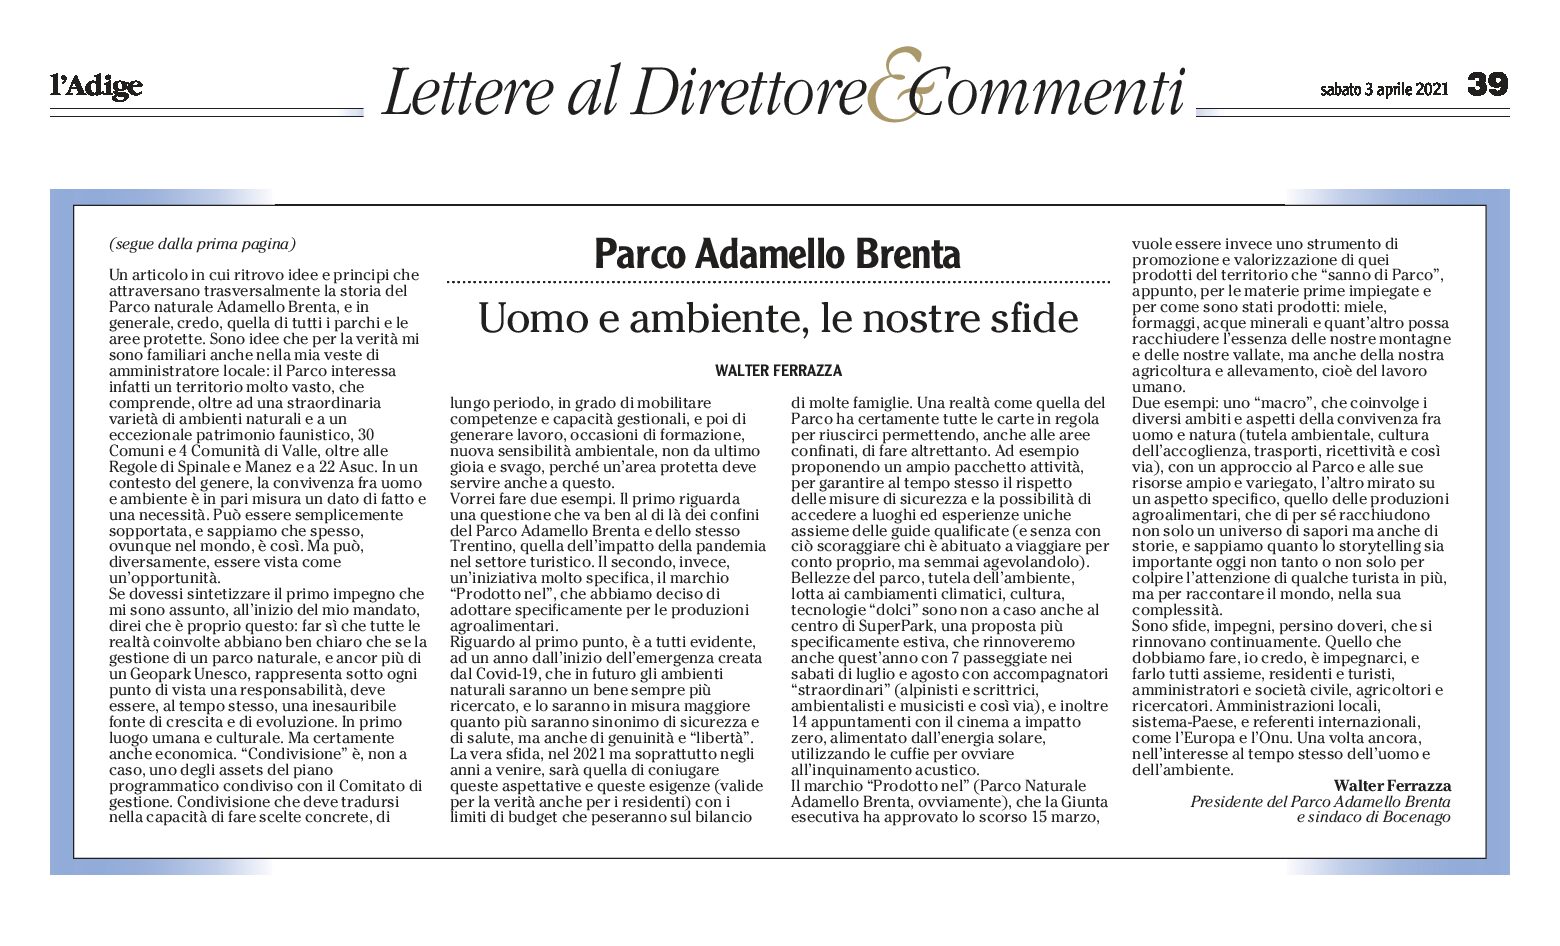 Parco Adamello Brenta: uomo e ambiente le nostre sfide. Lettera del presidente Ferrazza